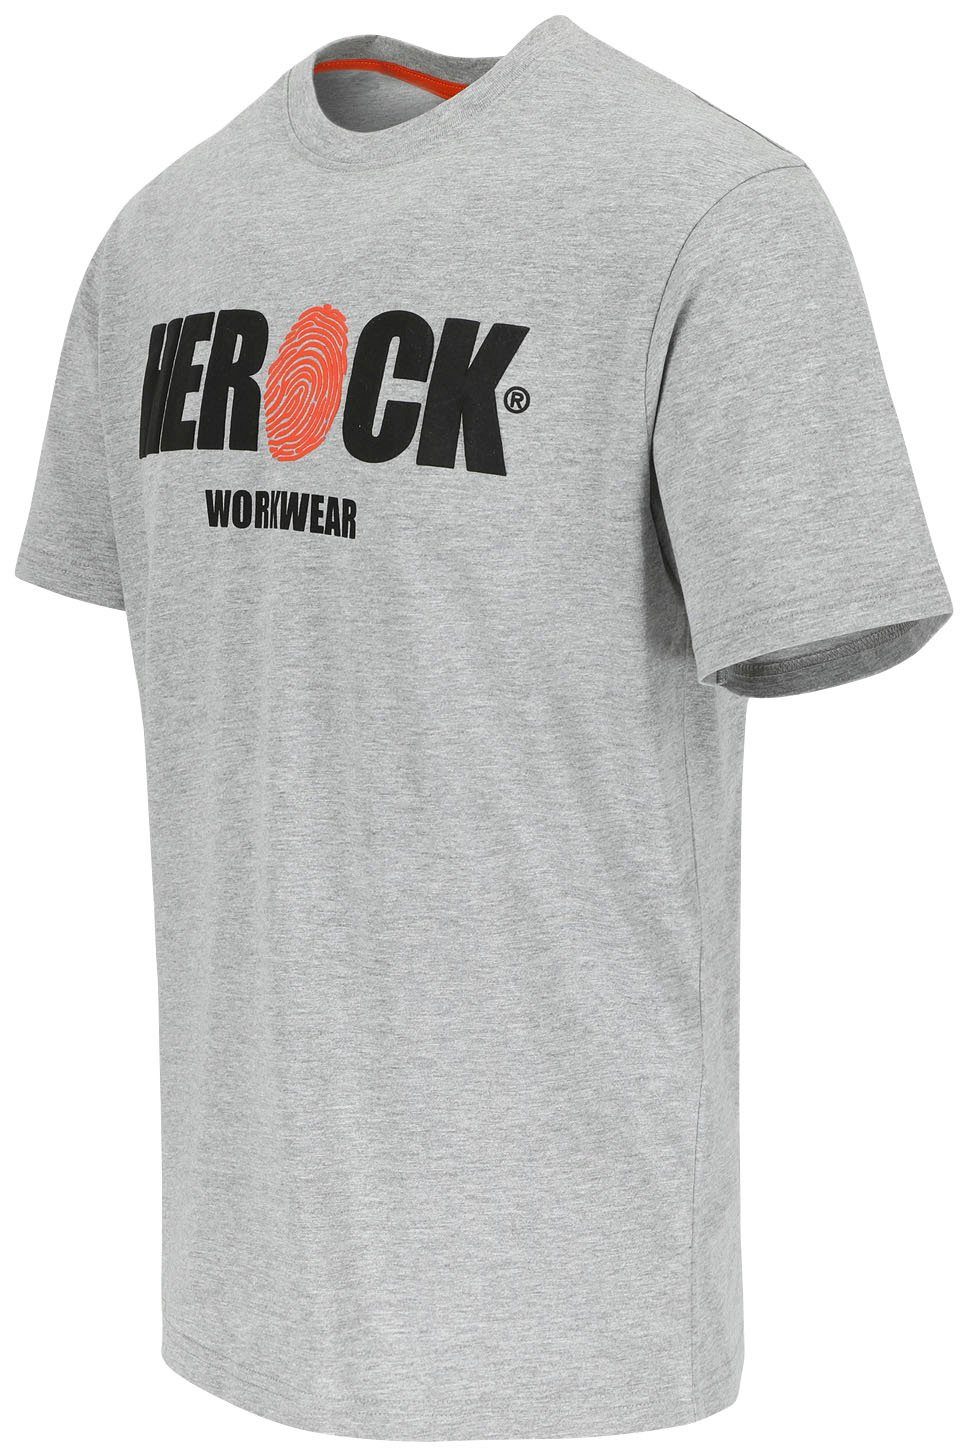 Herock T-Shirt ENI Baumwolle, Herock®-Aufdruck, grau mit Rundhals, angenehmes Tragegefühl